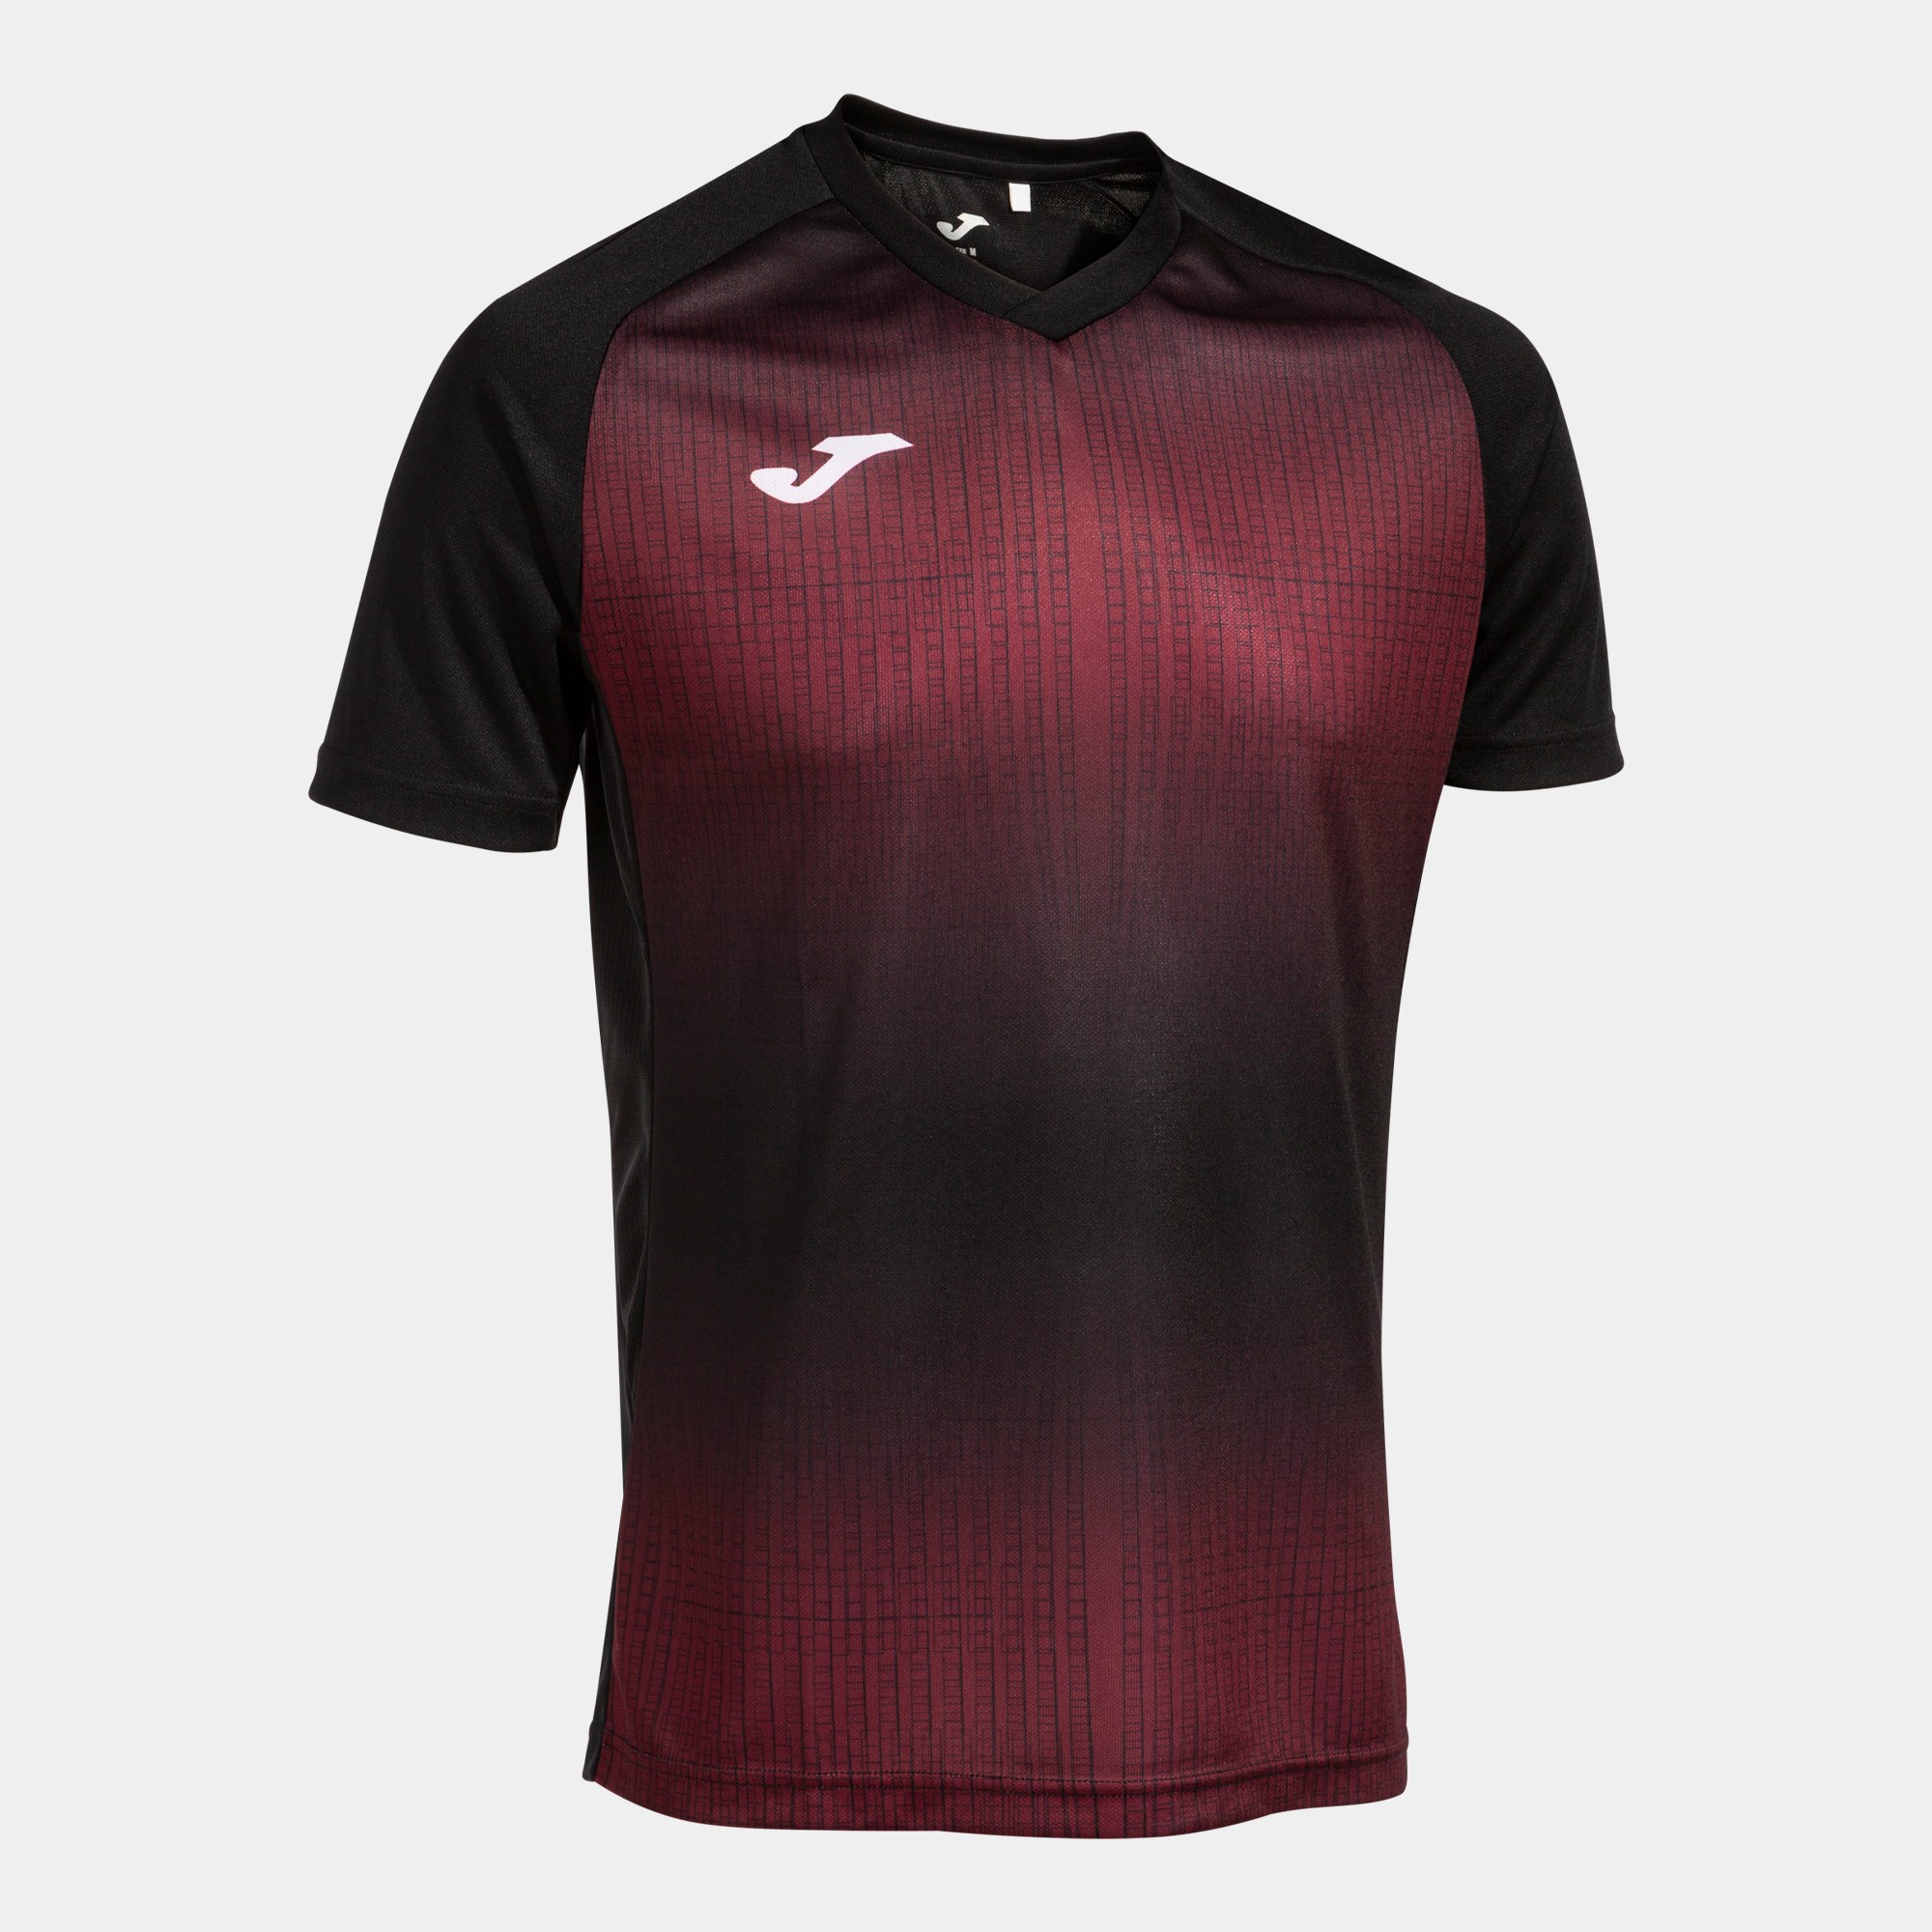 Joma Camiseta para hombre, rojo-negro, XXL-3XL, Rojo/negro